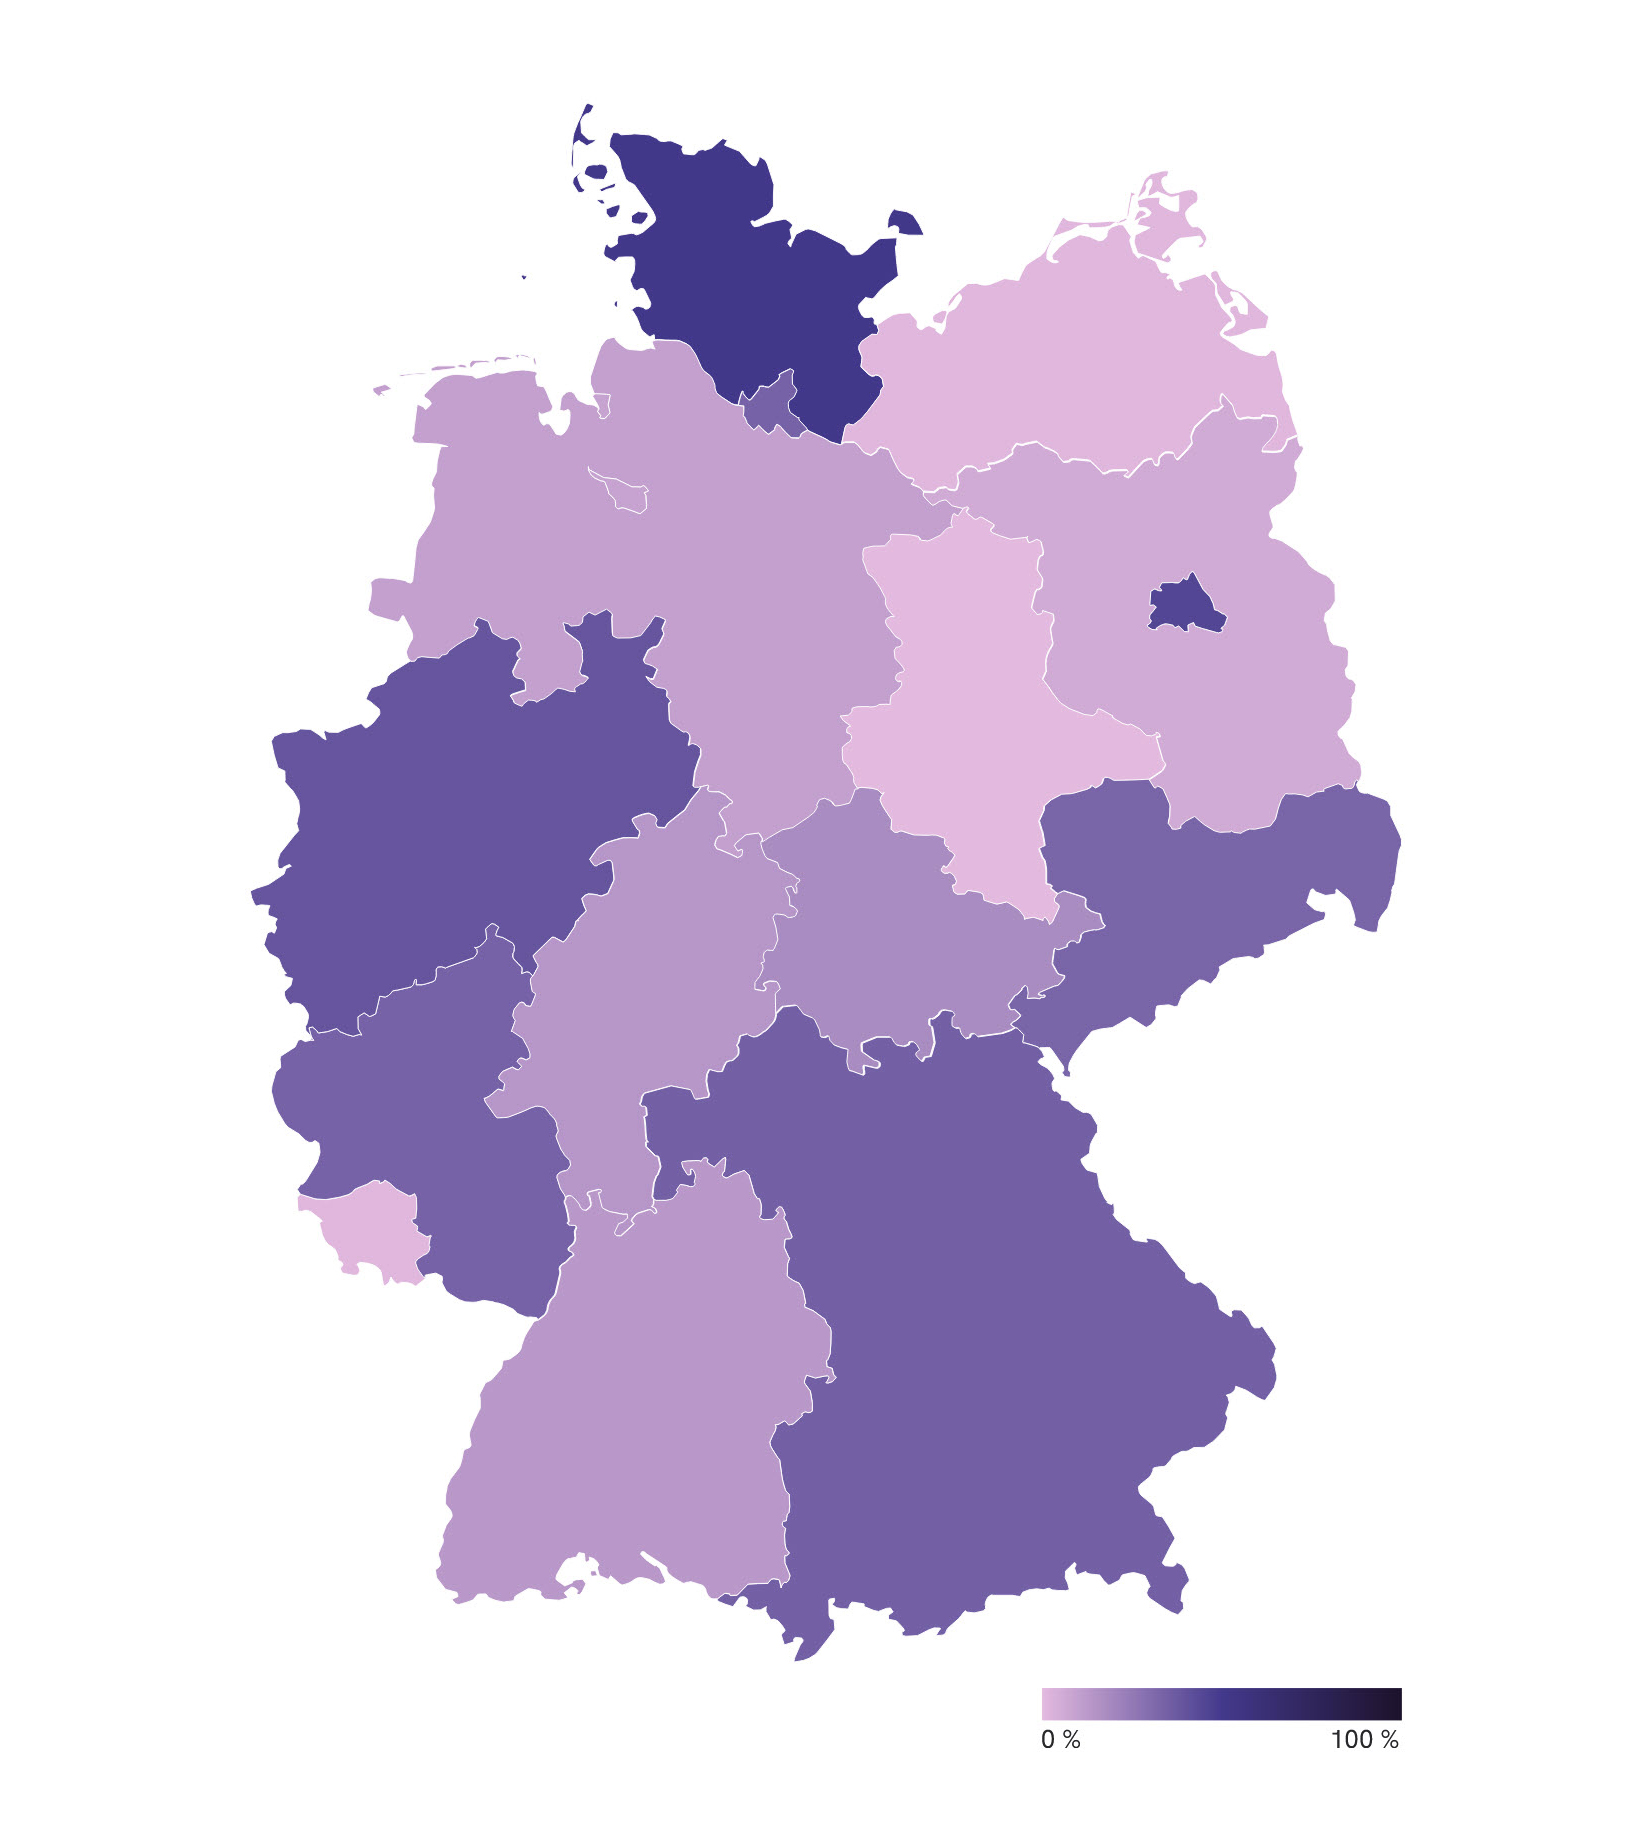 Deutschlandkarte, Länder abgebildet in unterschiedlichen Violett-Tönen.